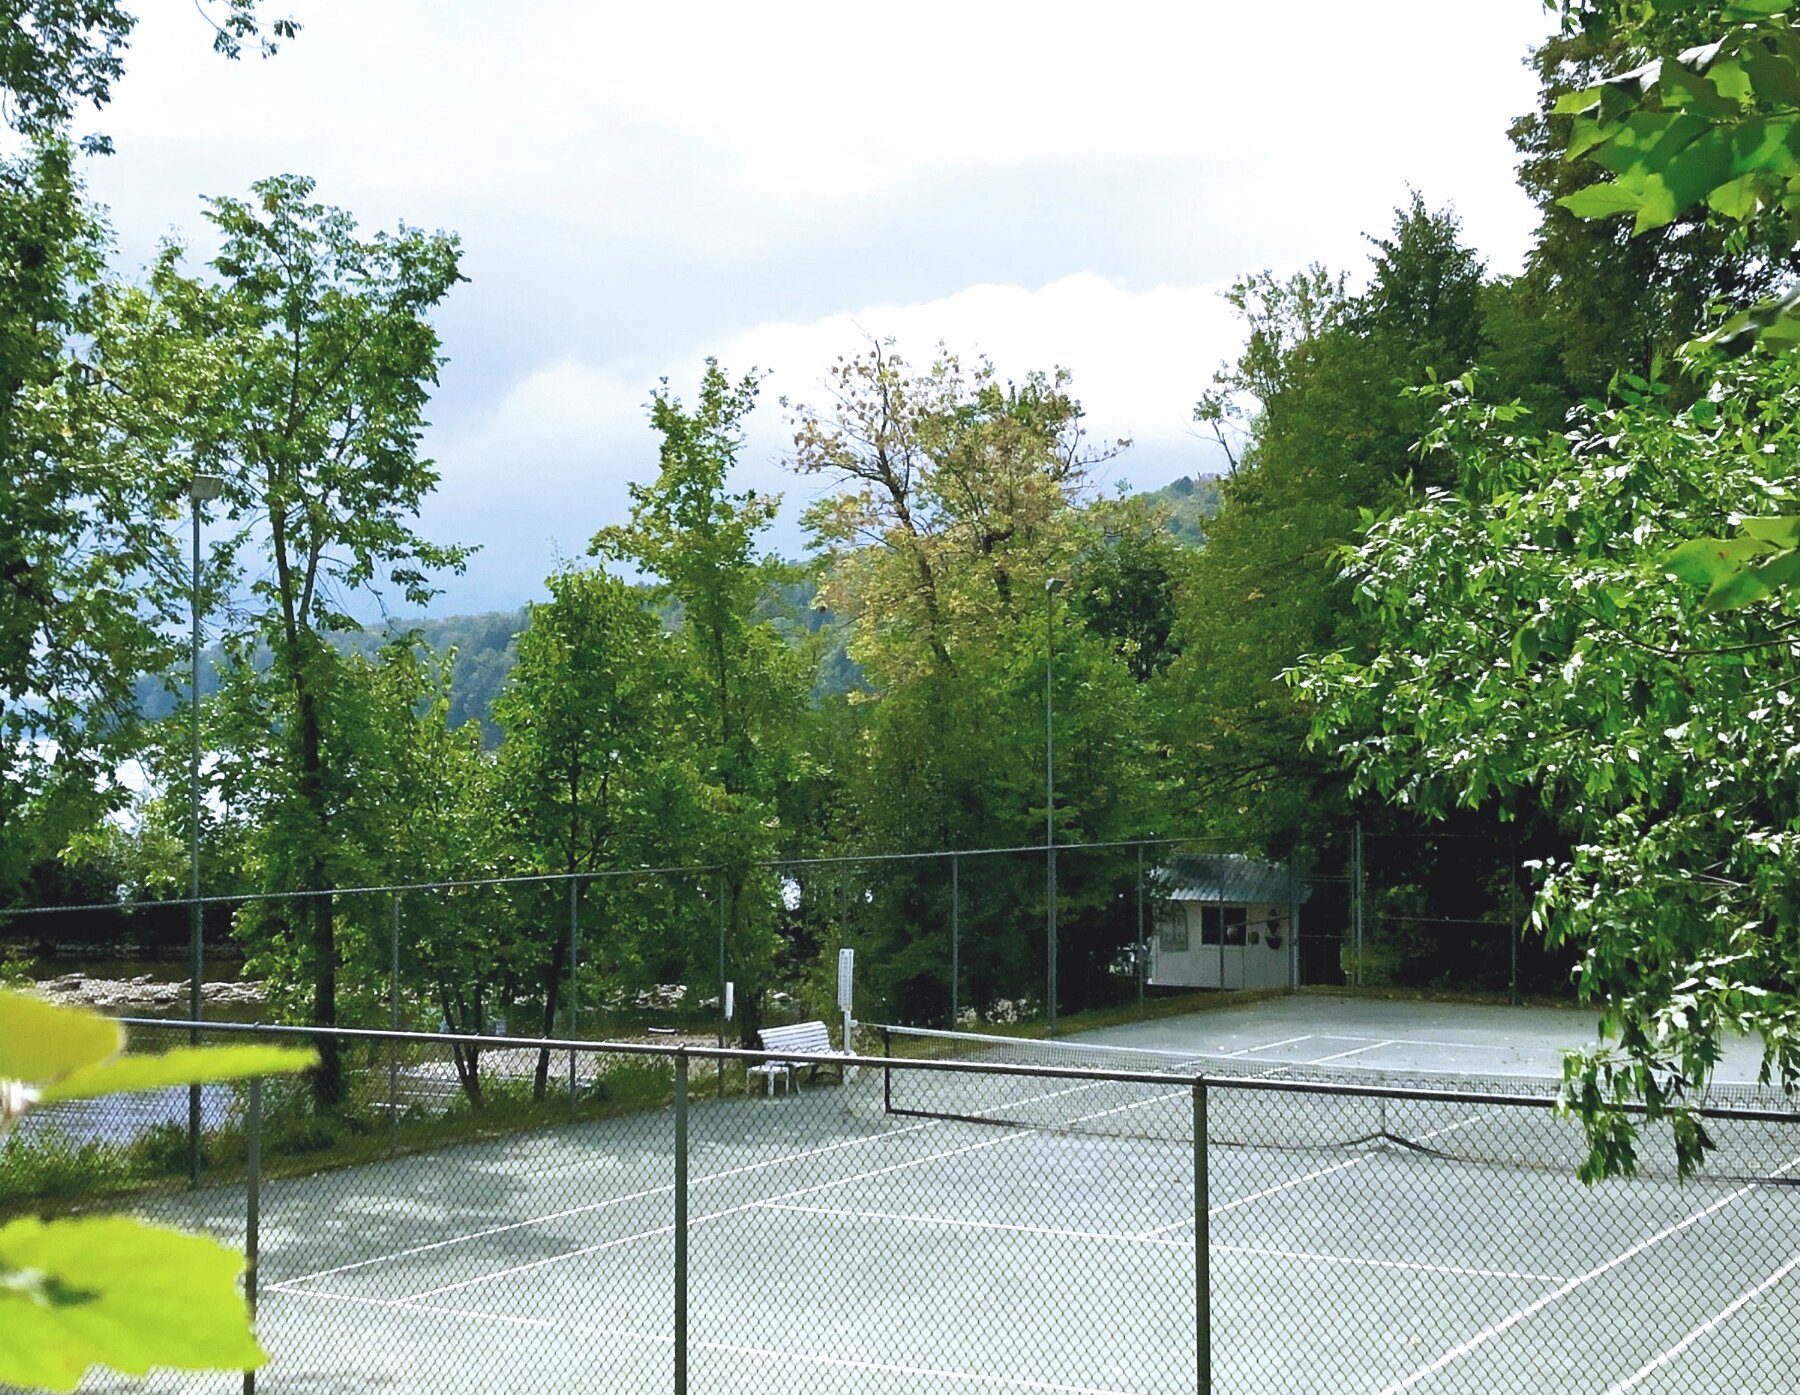 Terrain de tennis au bord du lac